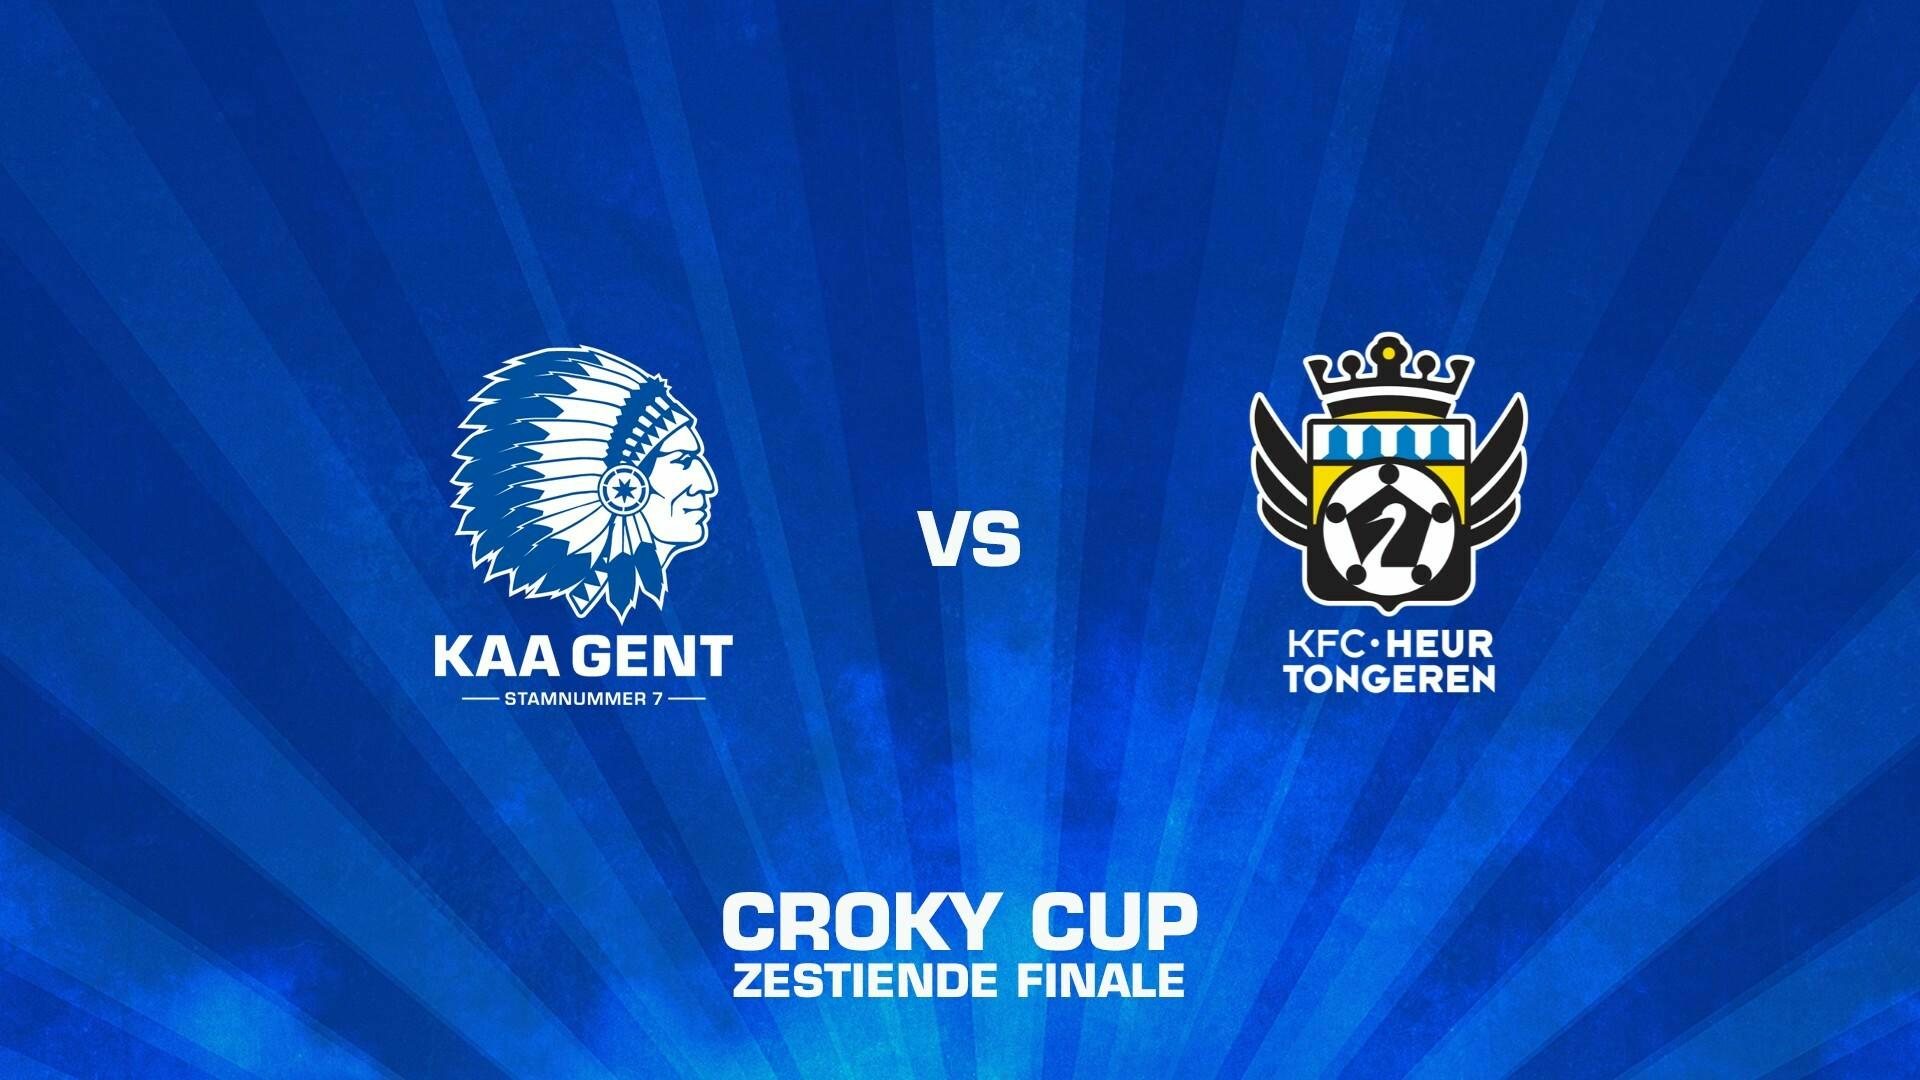  1/16de finale Croky Cup tegen KFC Heur-Tongeren